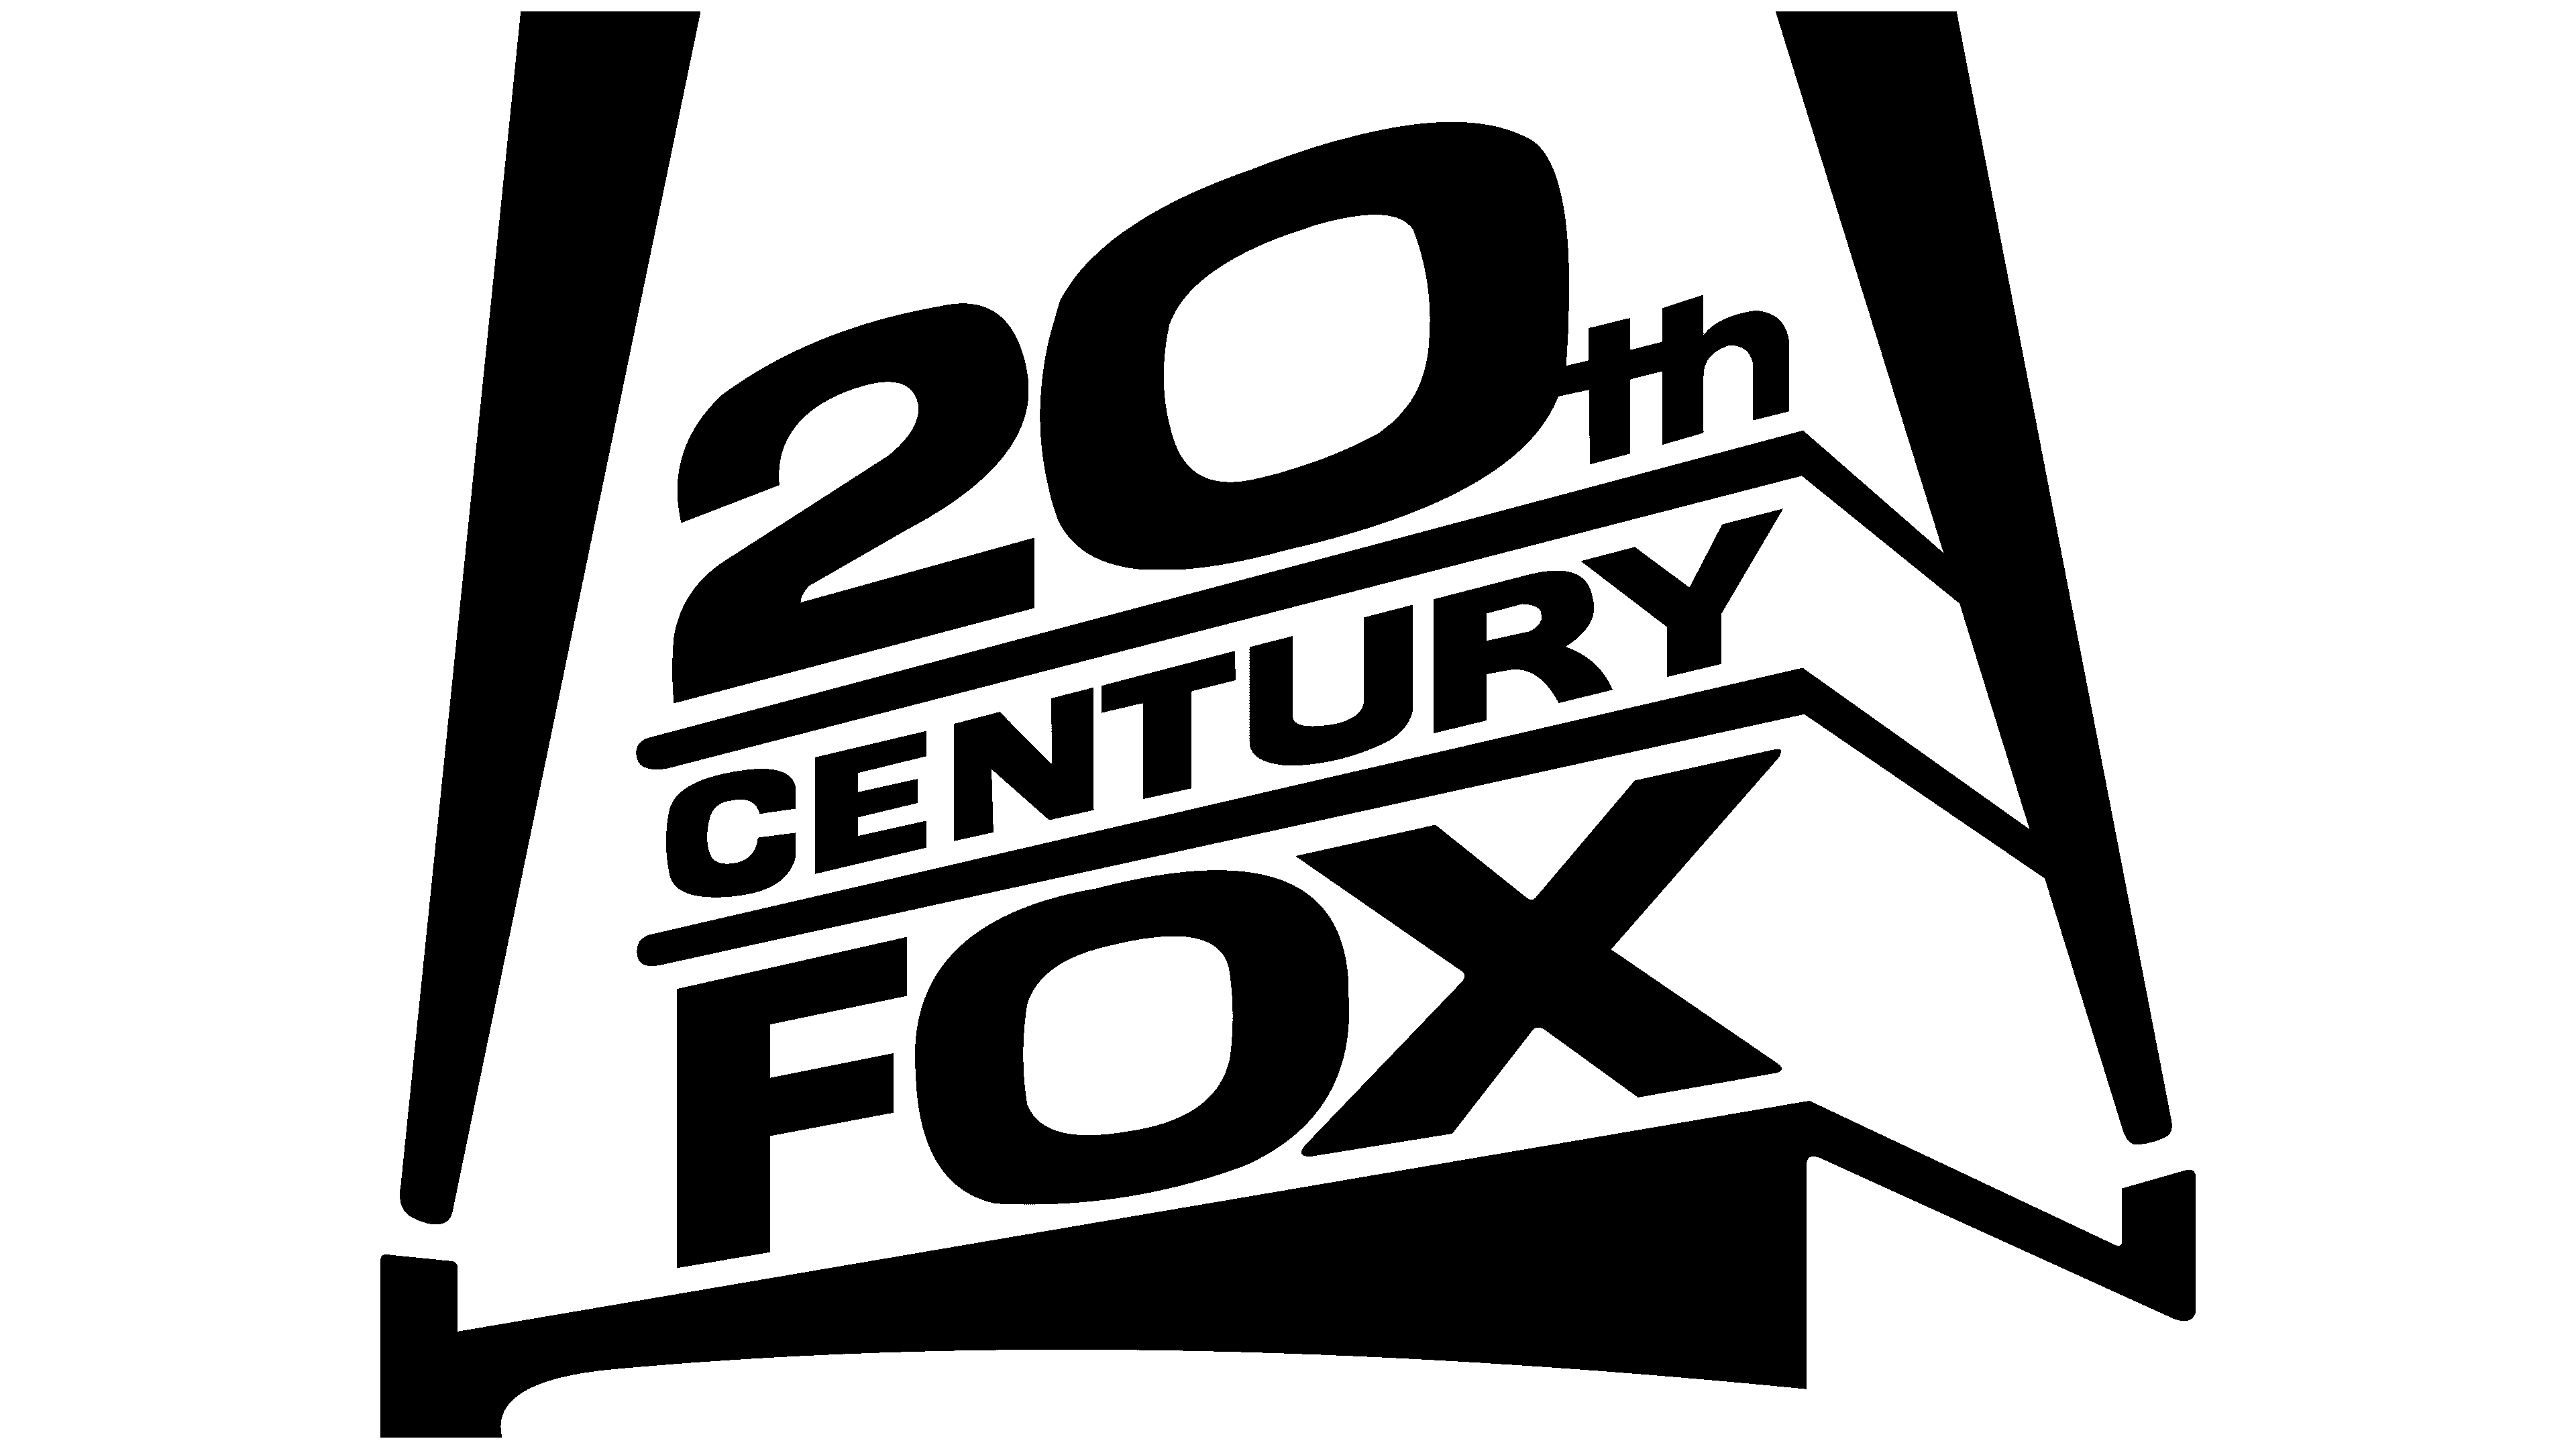 20th Century Fox Logo History 